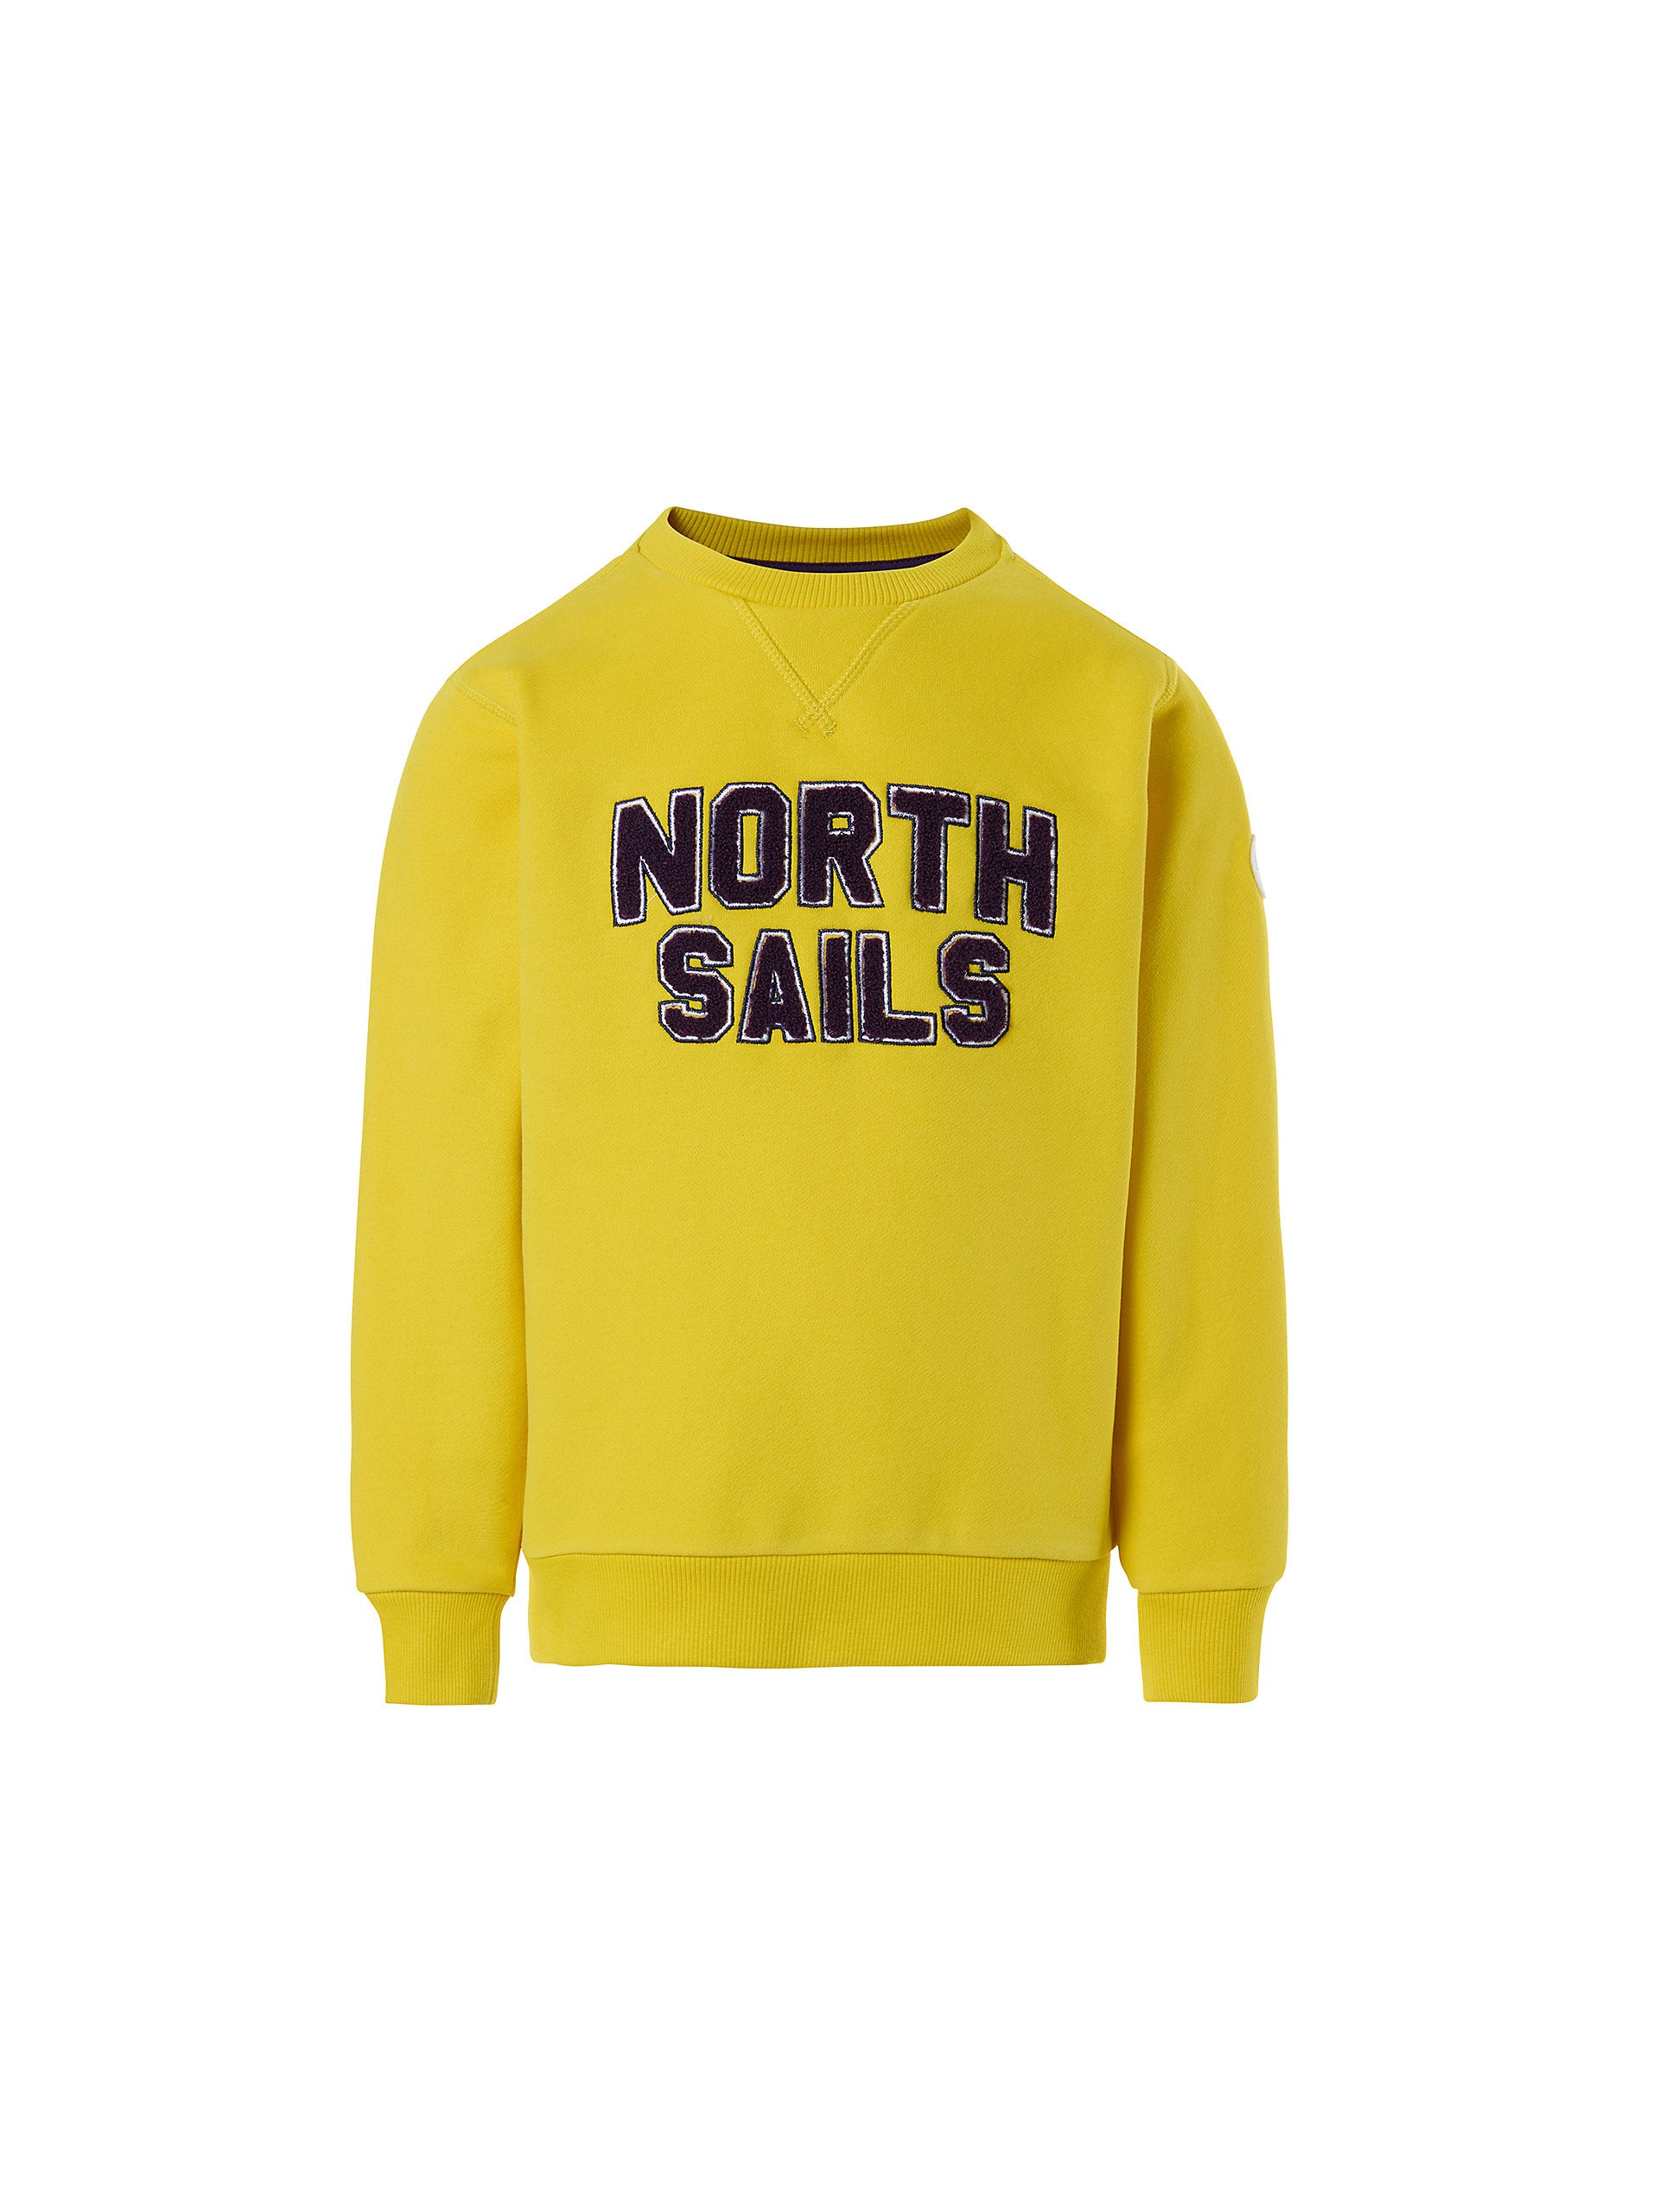 North Sails - Felpa con letteringNorth SailsYellow ocrhe10